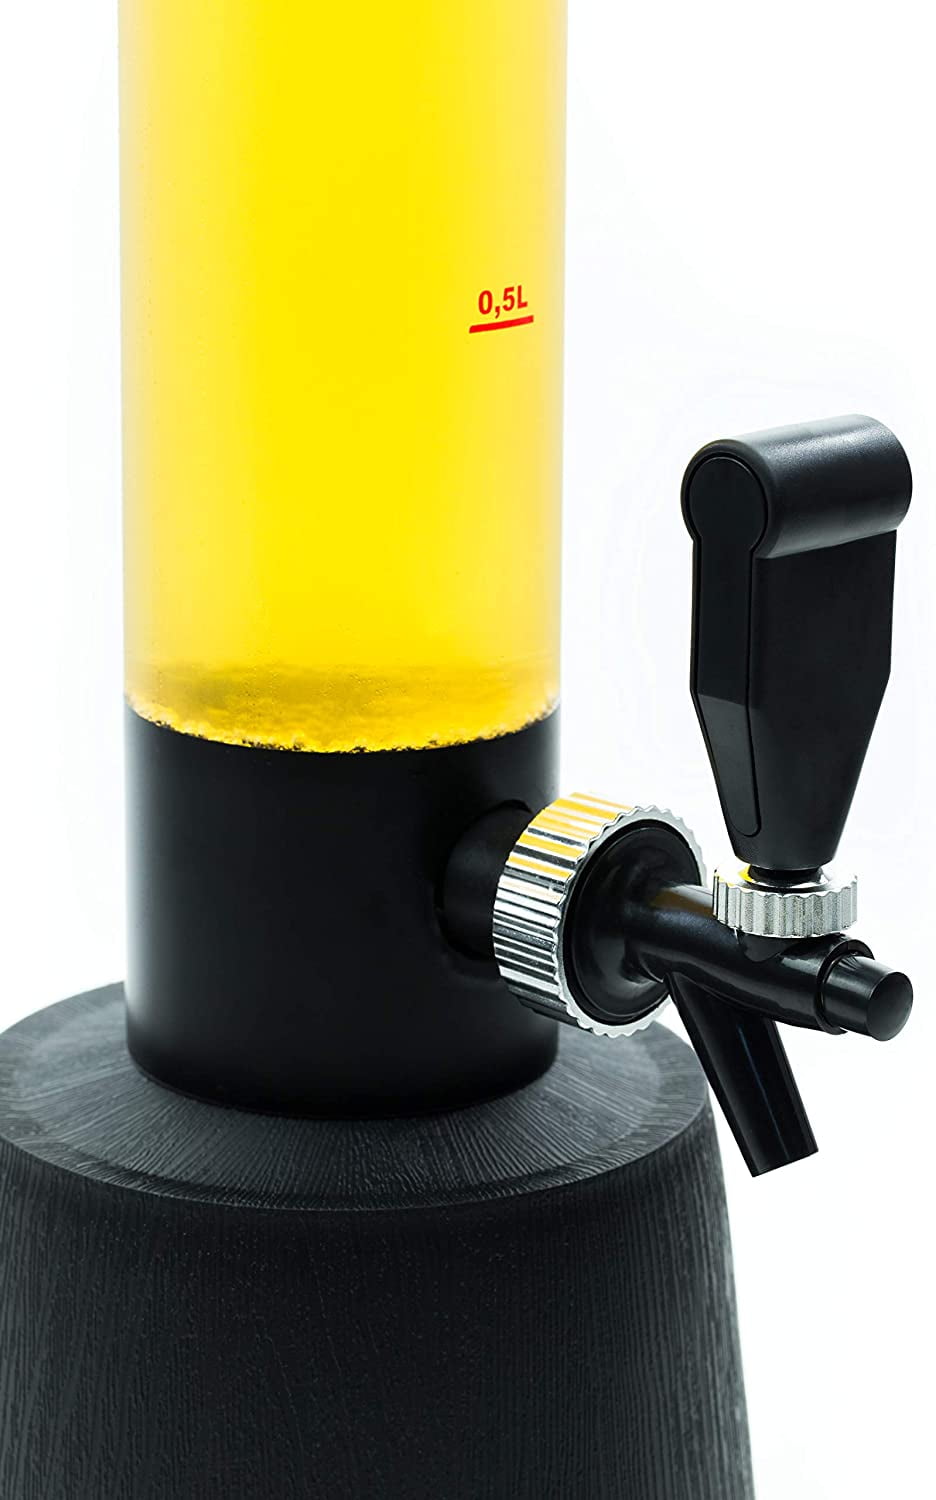 OGGI Beer Tower 3L/100oz - Beverage Dispenser with